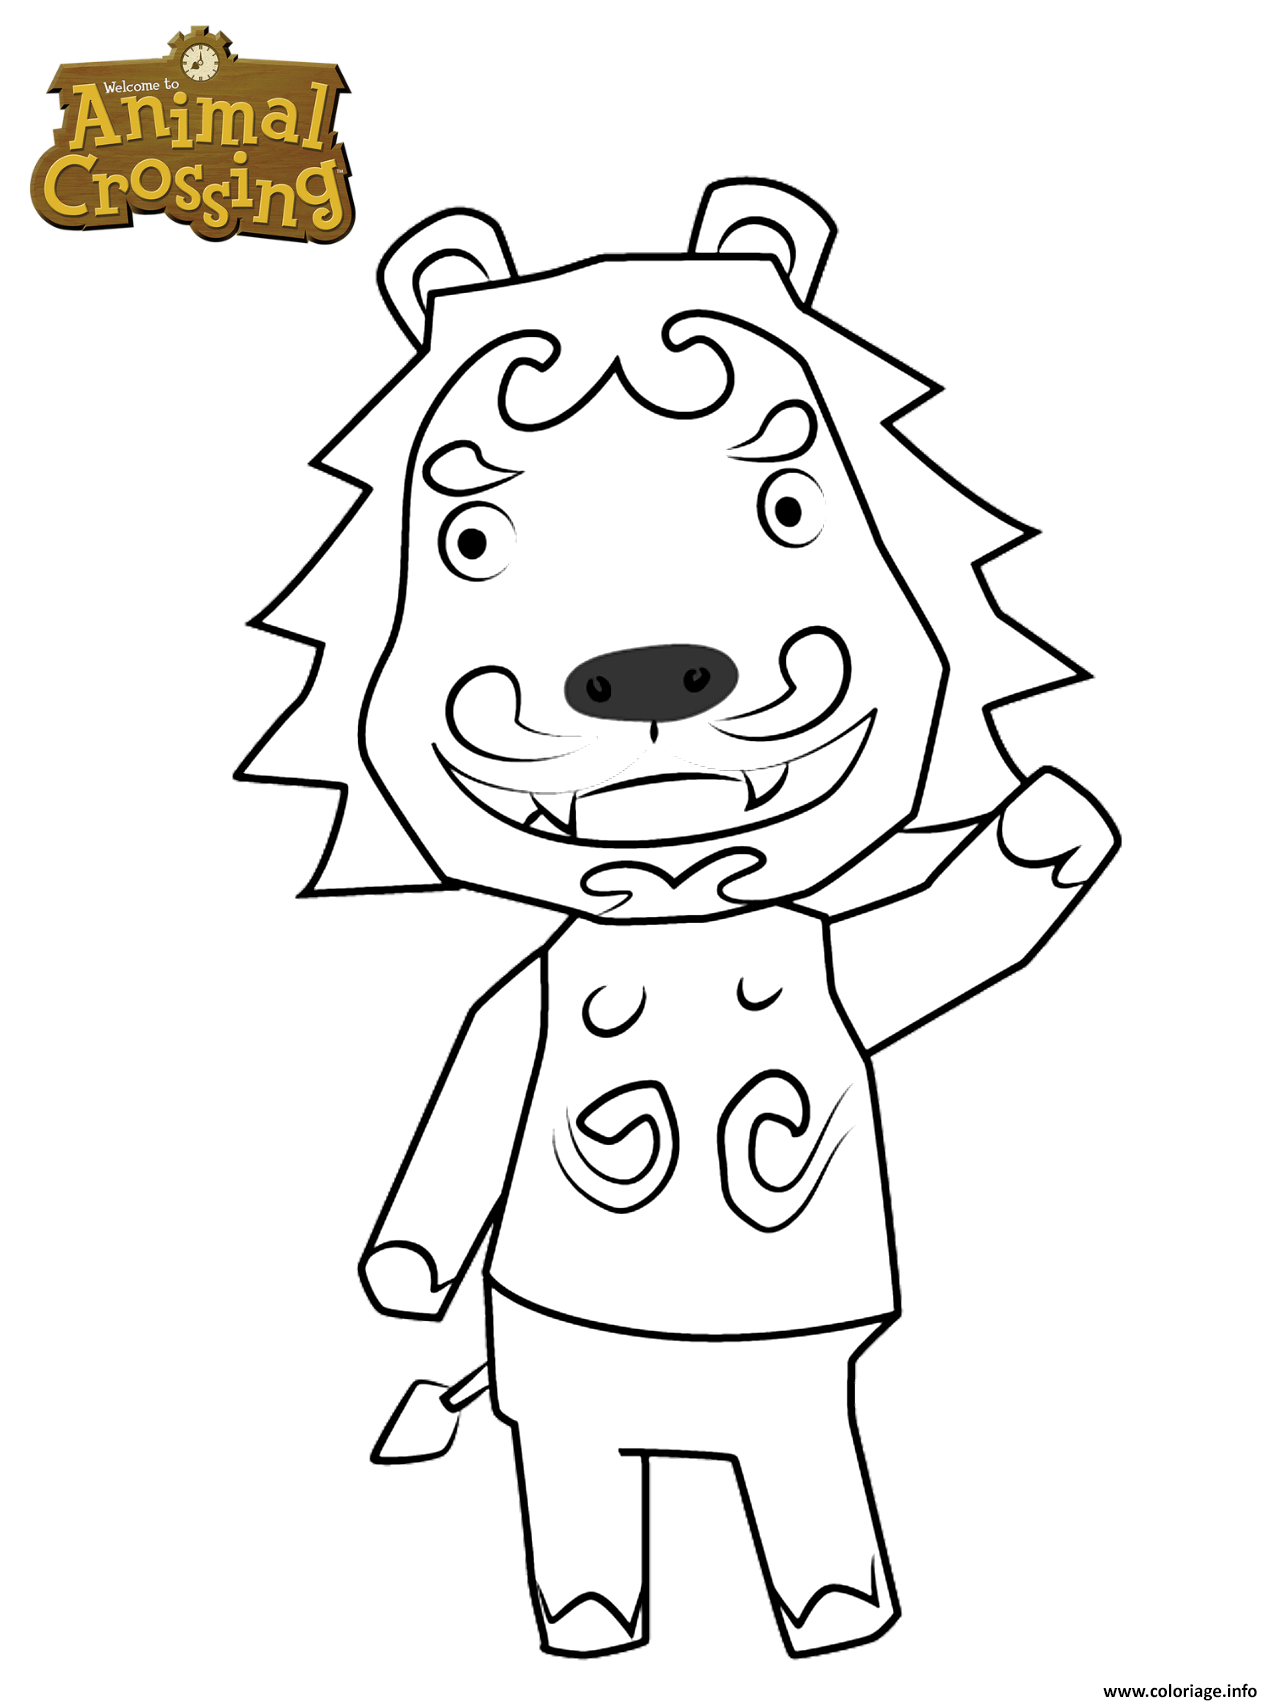 Coloriage Animal Crossing Lion Dessin à Imprimer